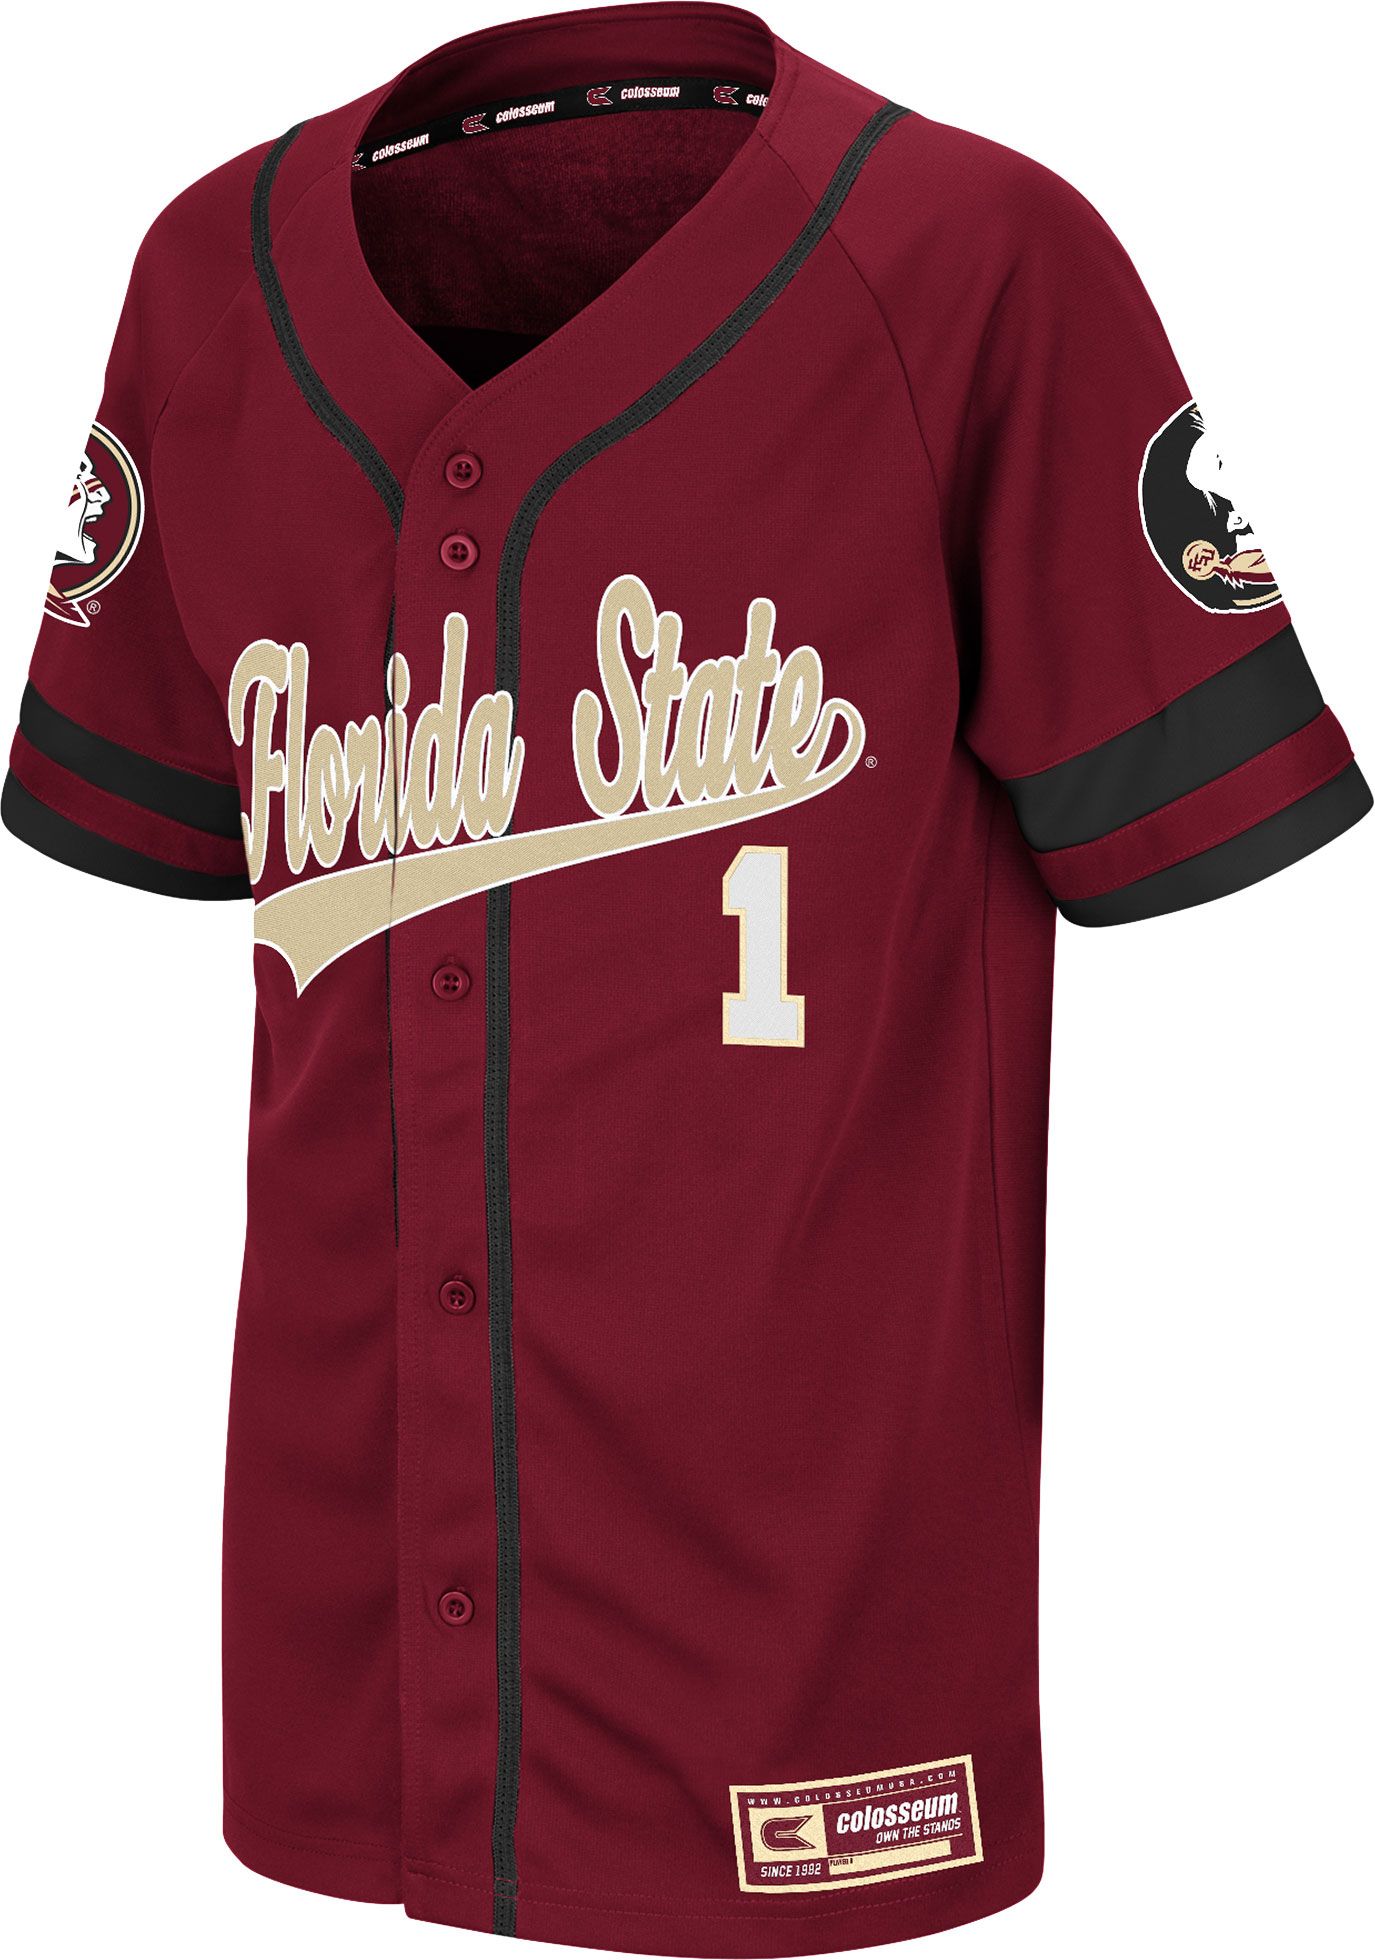 florida state baseball jersey